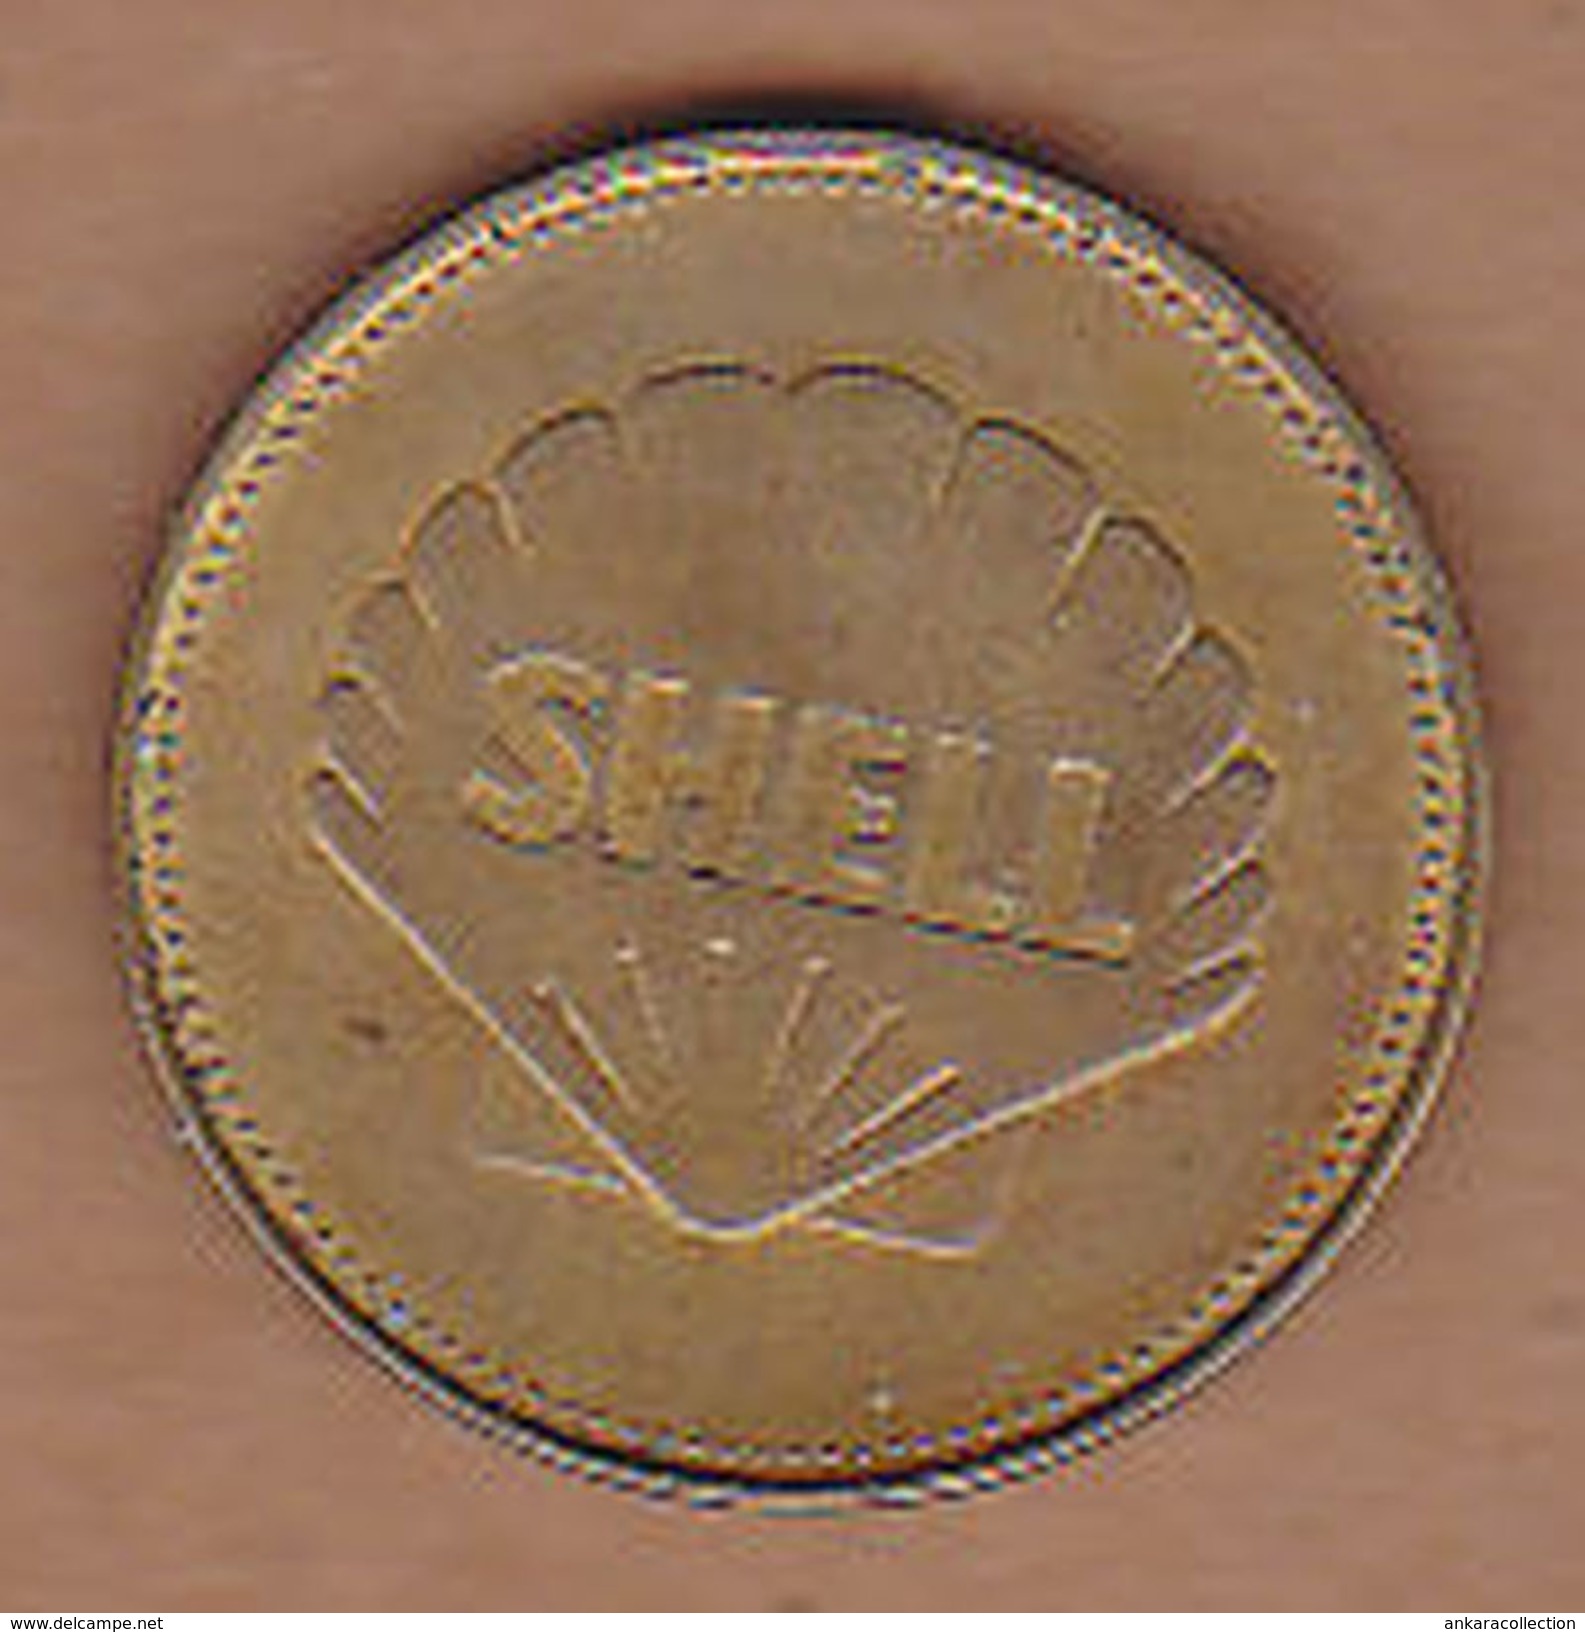 AC -  ARMSTRONG  ALDRIN  AND COLLINS APOLLO 11 1969 SHELL  TOKEN - JETON - Monedas / De Necesidad